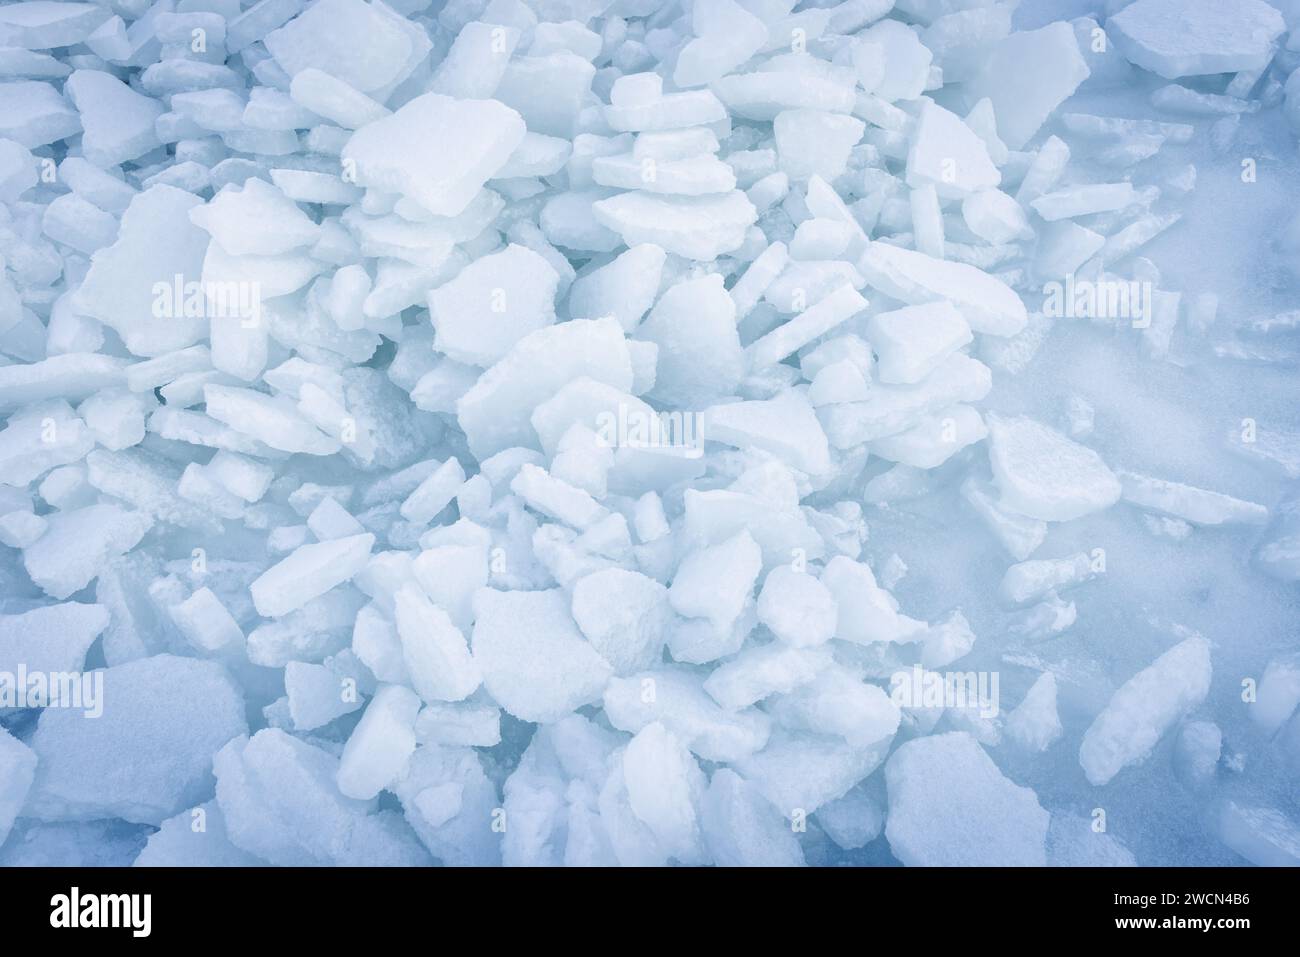 La glace bosse la texture de fond. Des éclats de glace brisés reposent sur la surface gelée de la mer Baltique un jour d'hiver, vue de dessus Banque D'Images